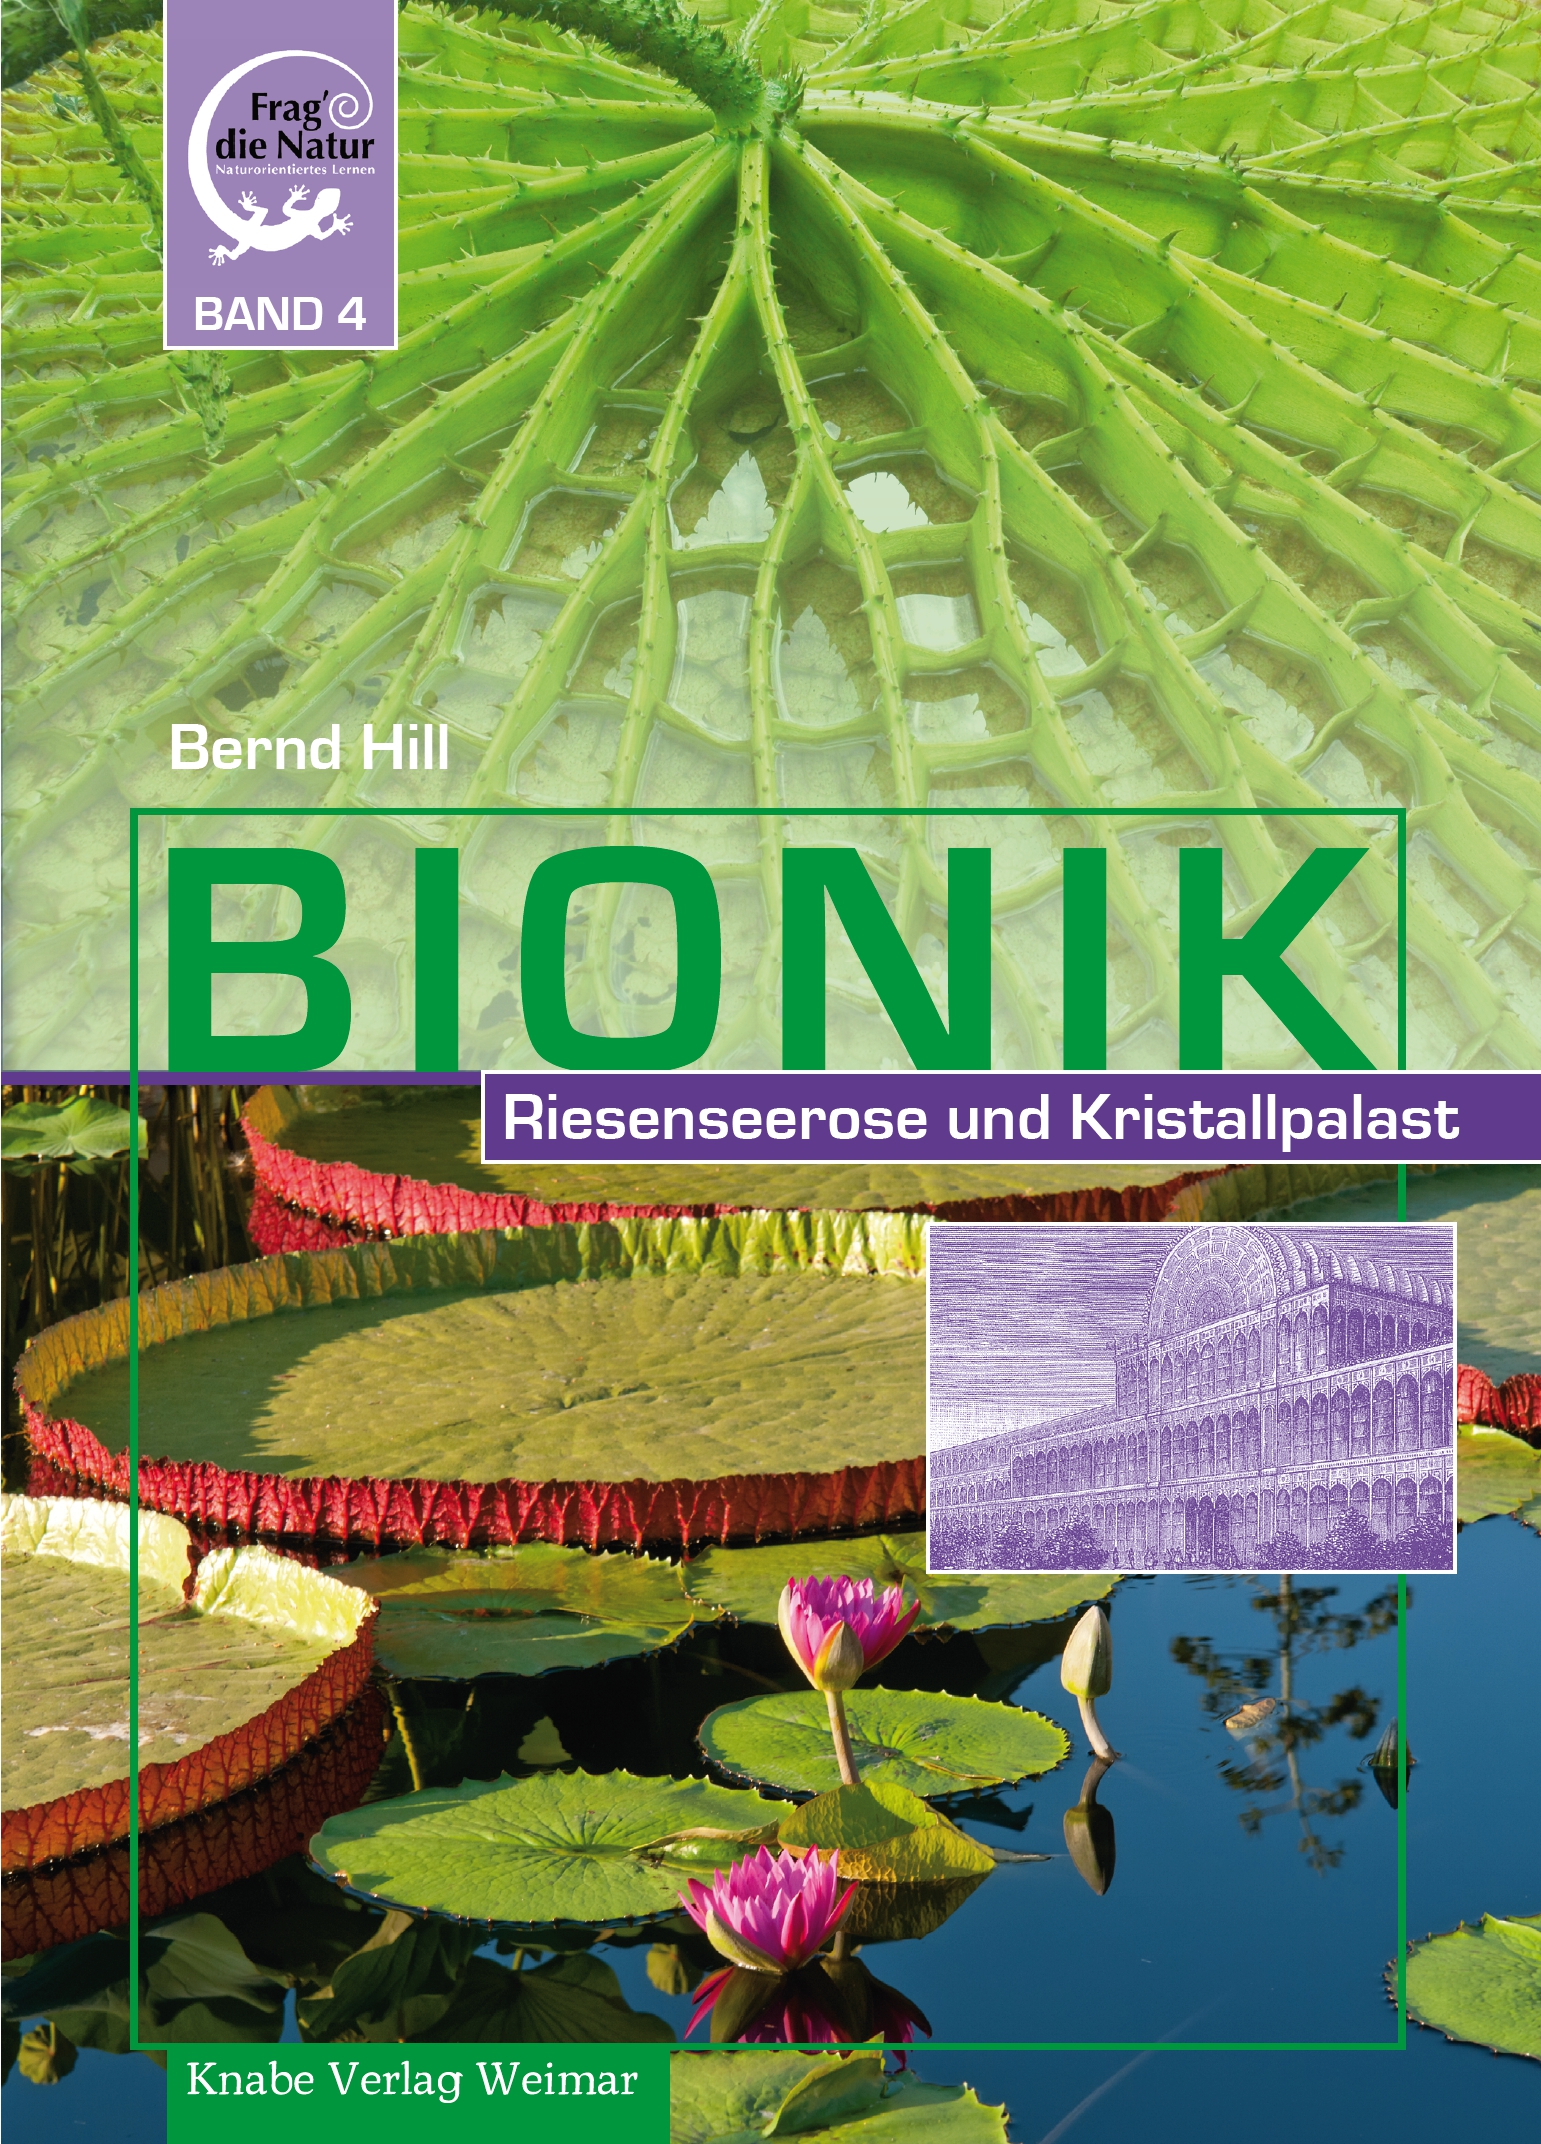 Bionik IV. Riesenseerose und Kristallpalast